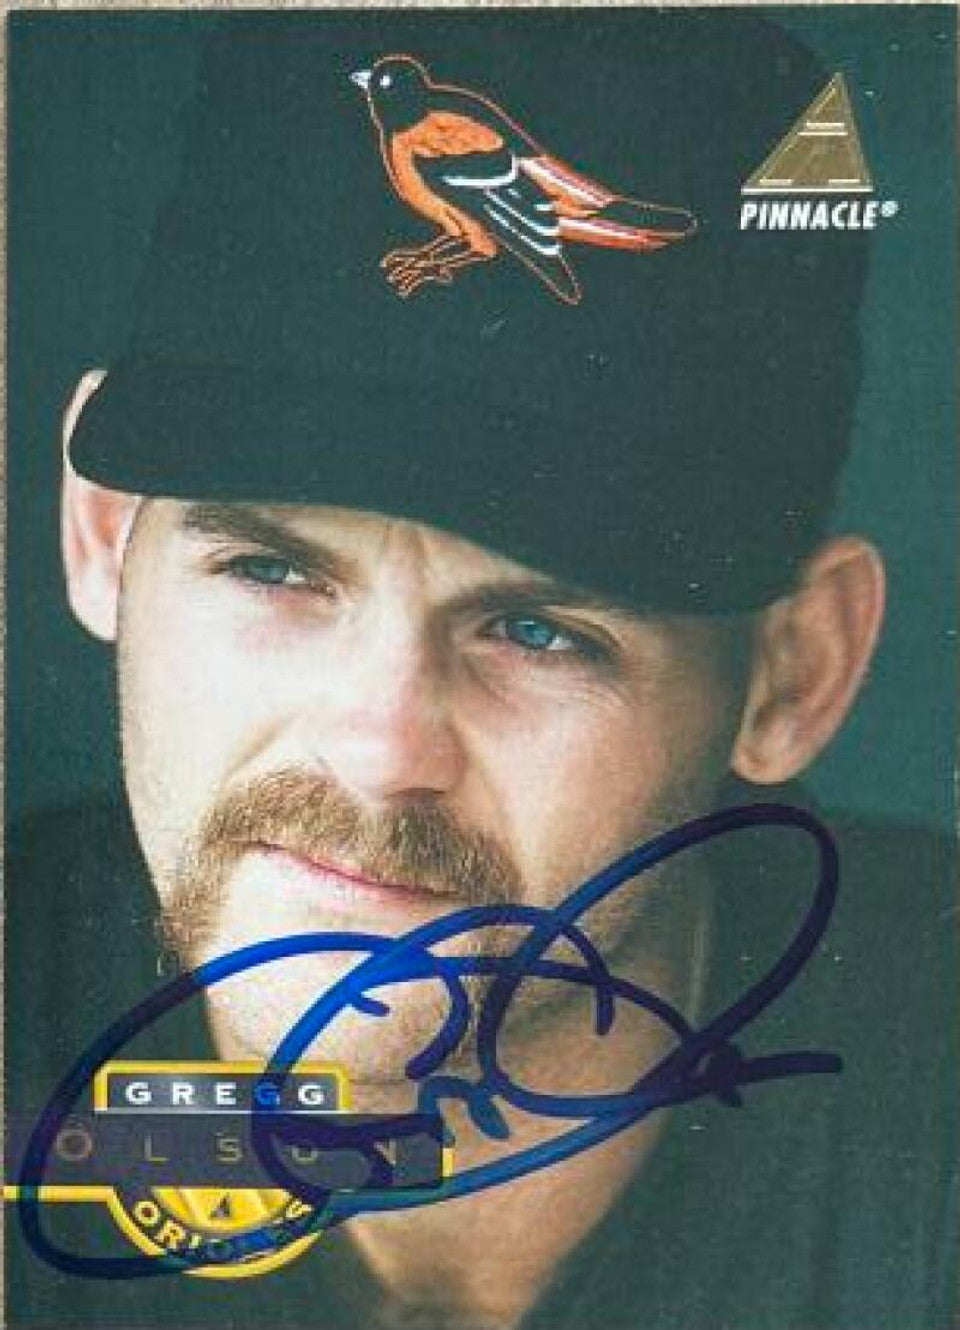 グレッグ・オルソン サイン入り 1994 ピナクル ベースボール カード - ボルチモア オリオールズ